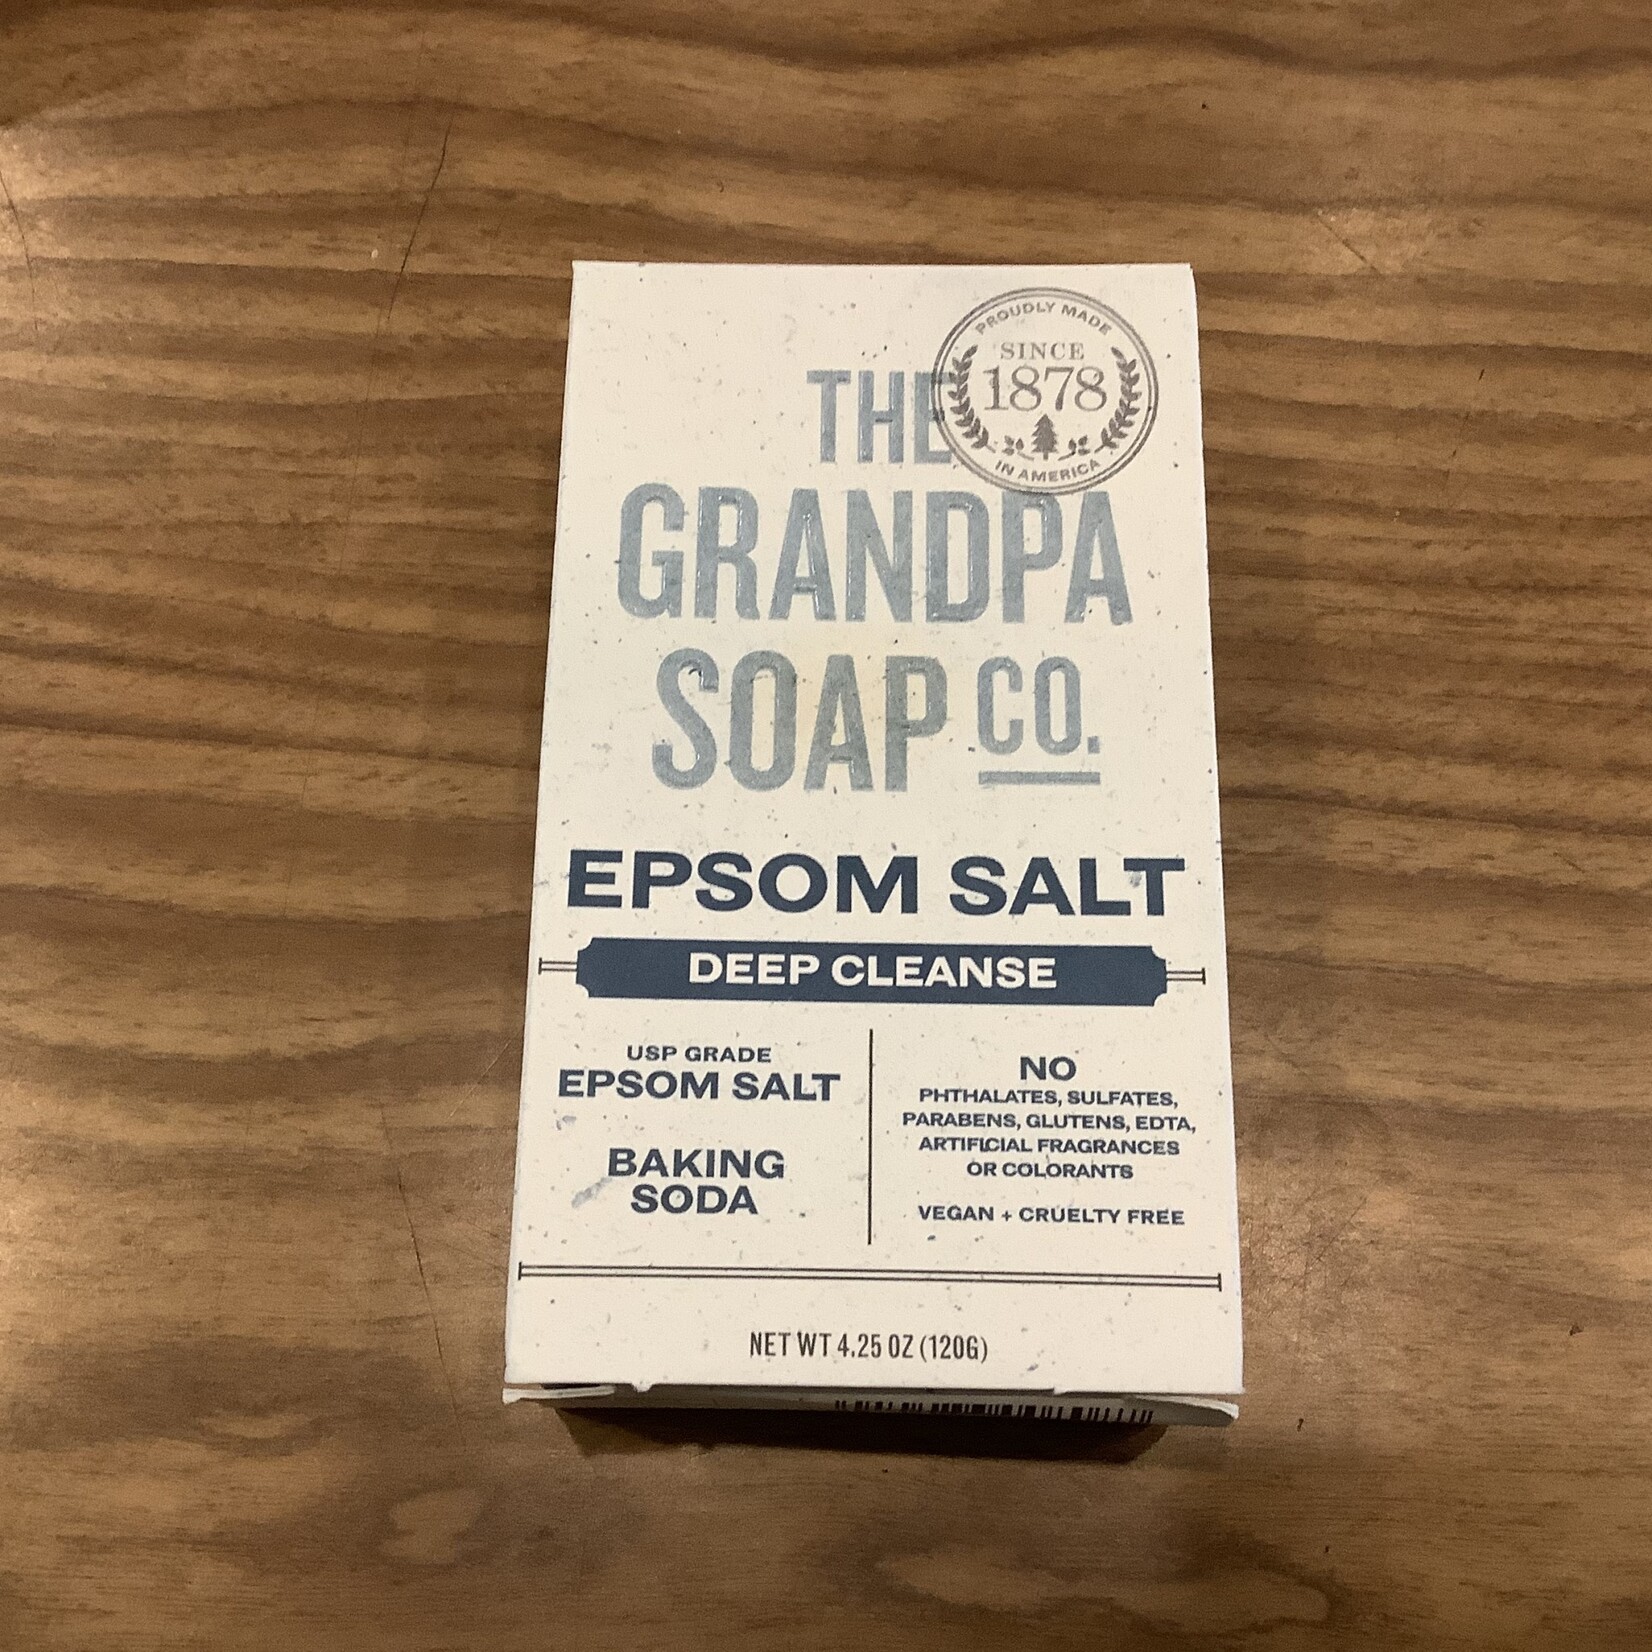 Grandpa Soap Co. - Face & Body Bar Soap